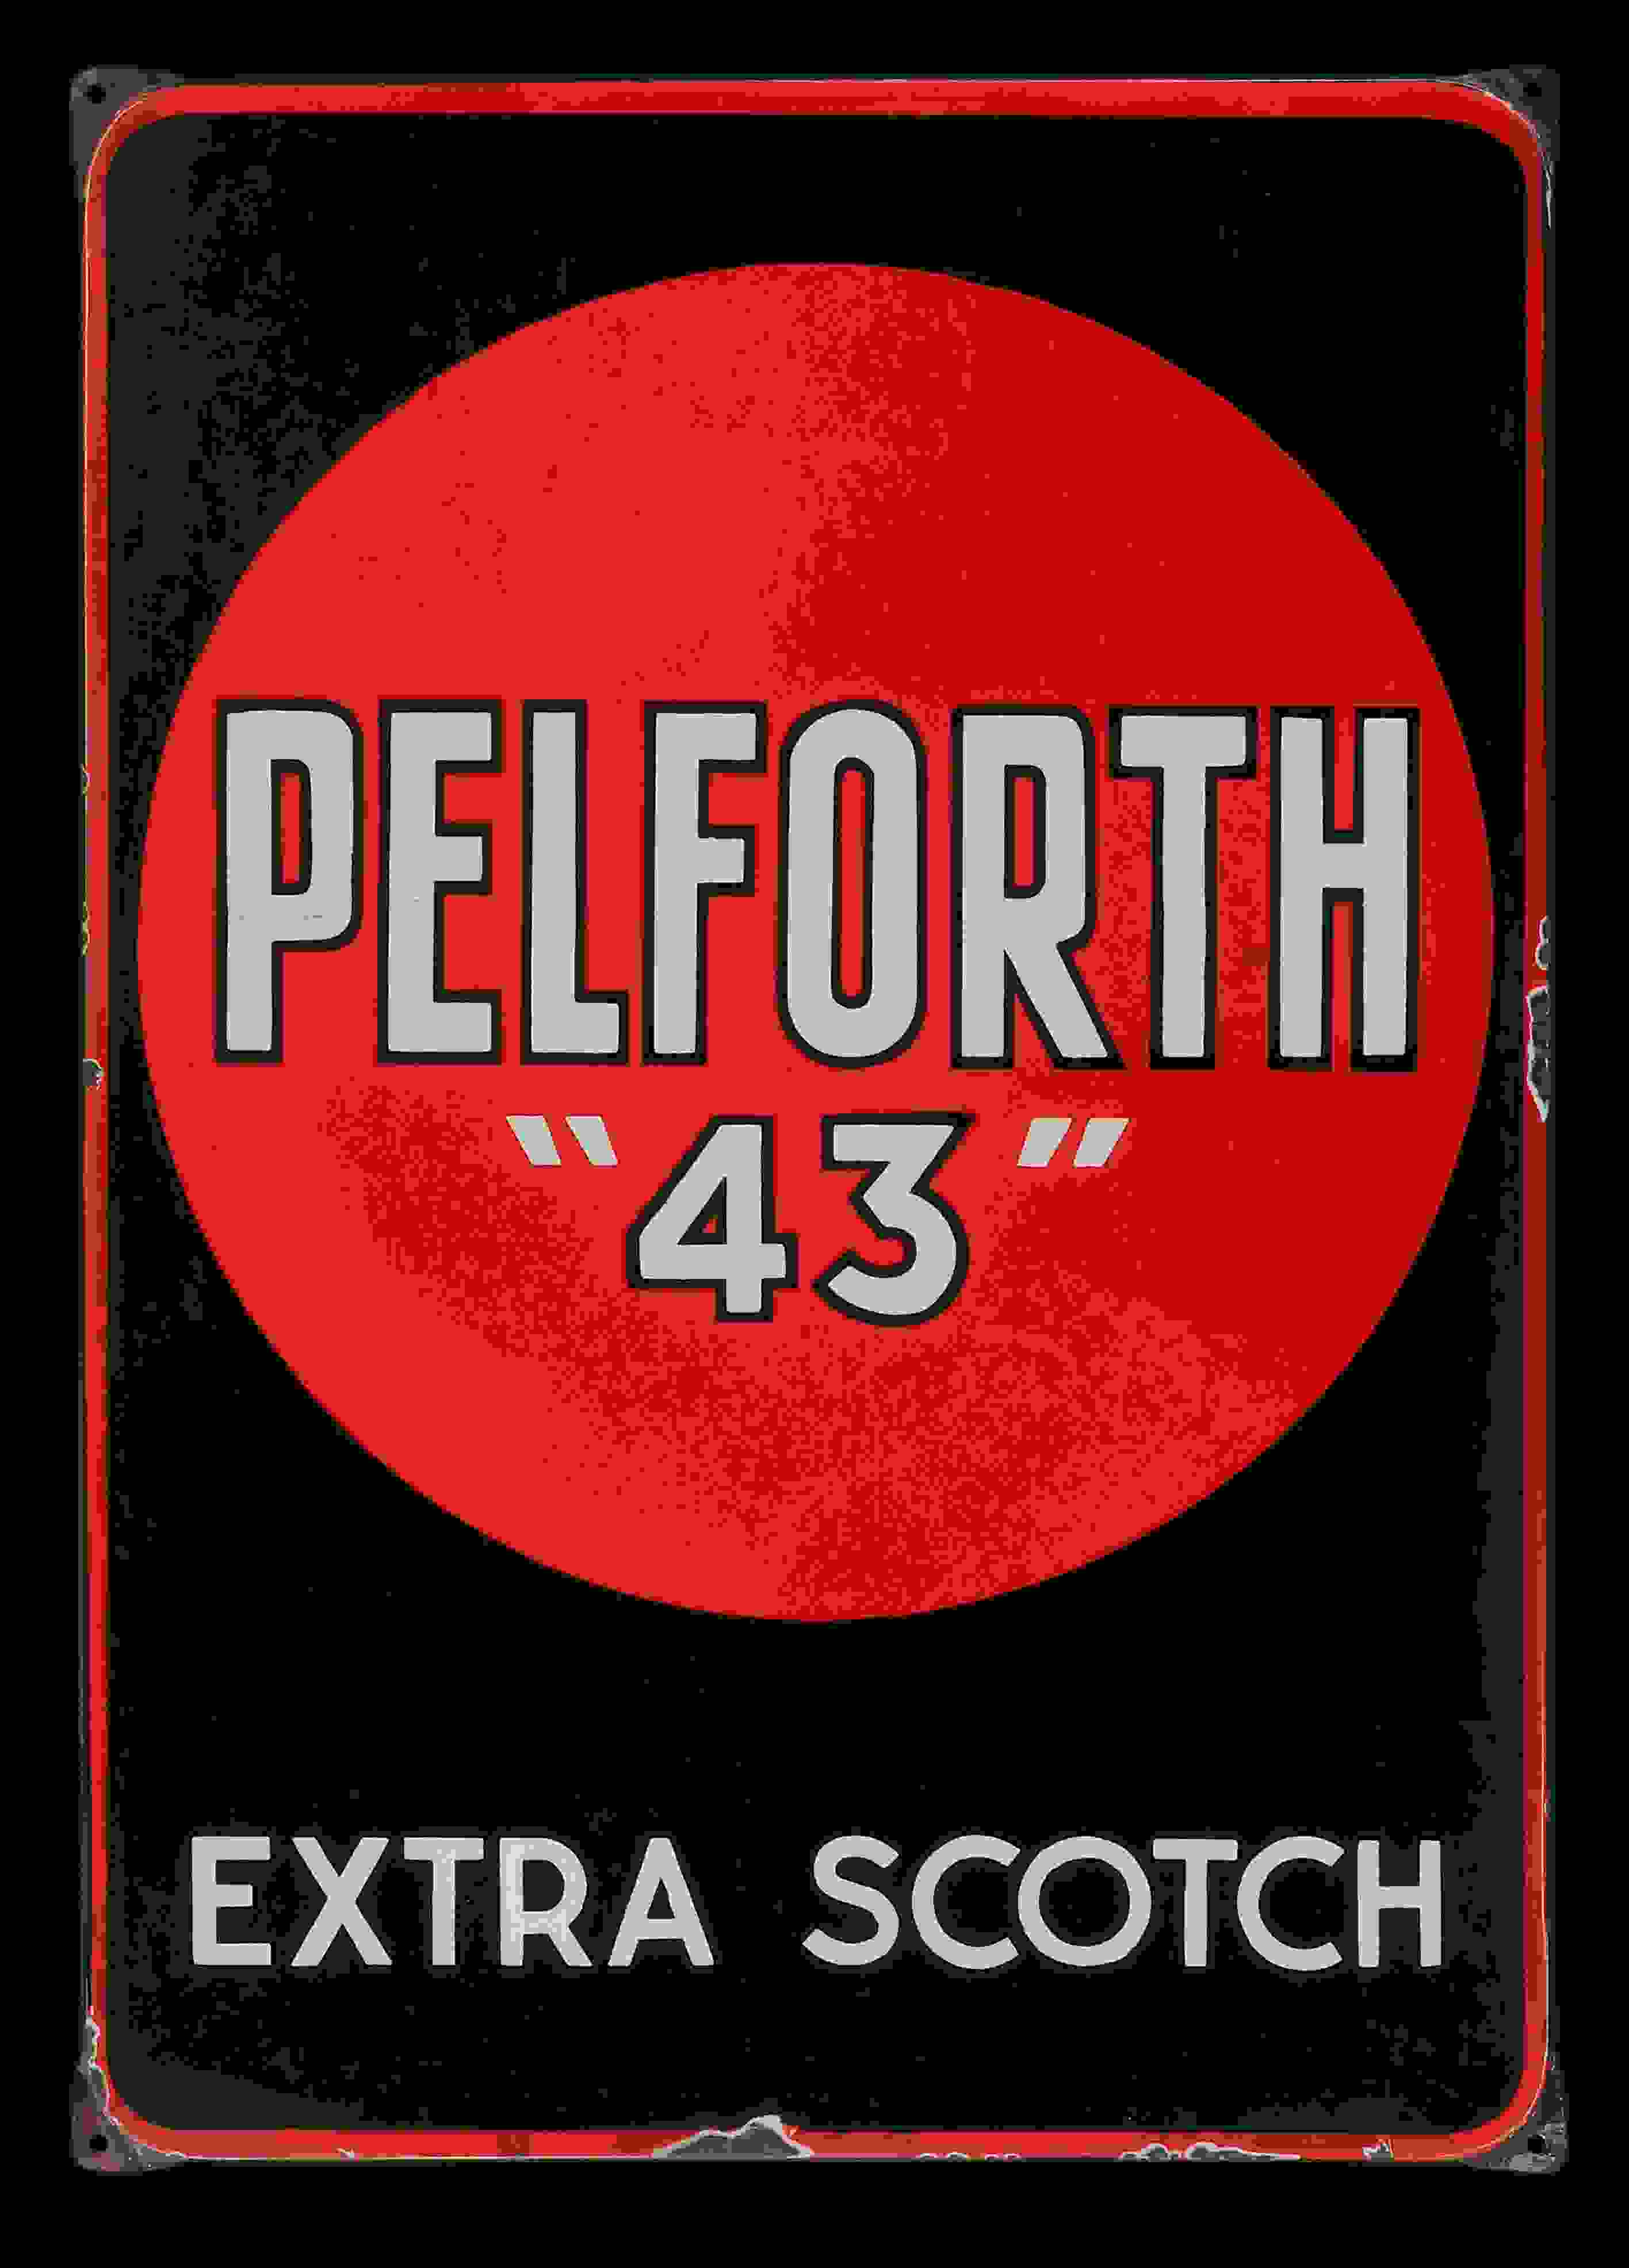 Pelforth "43" Extra Scotch 